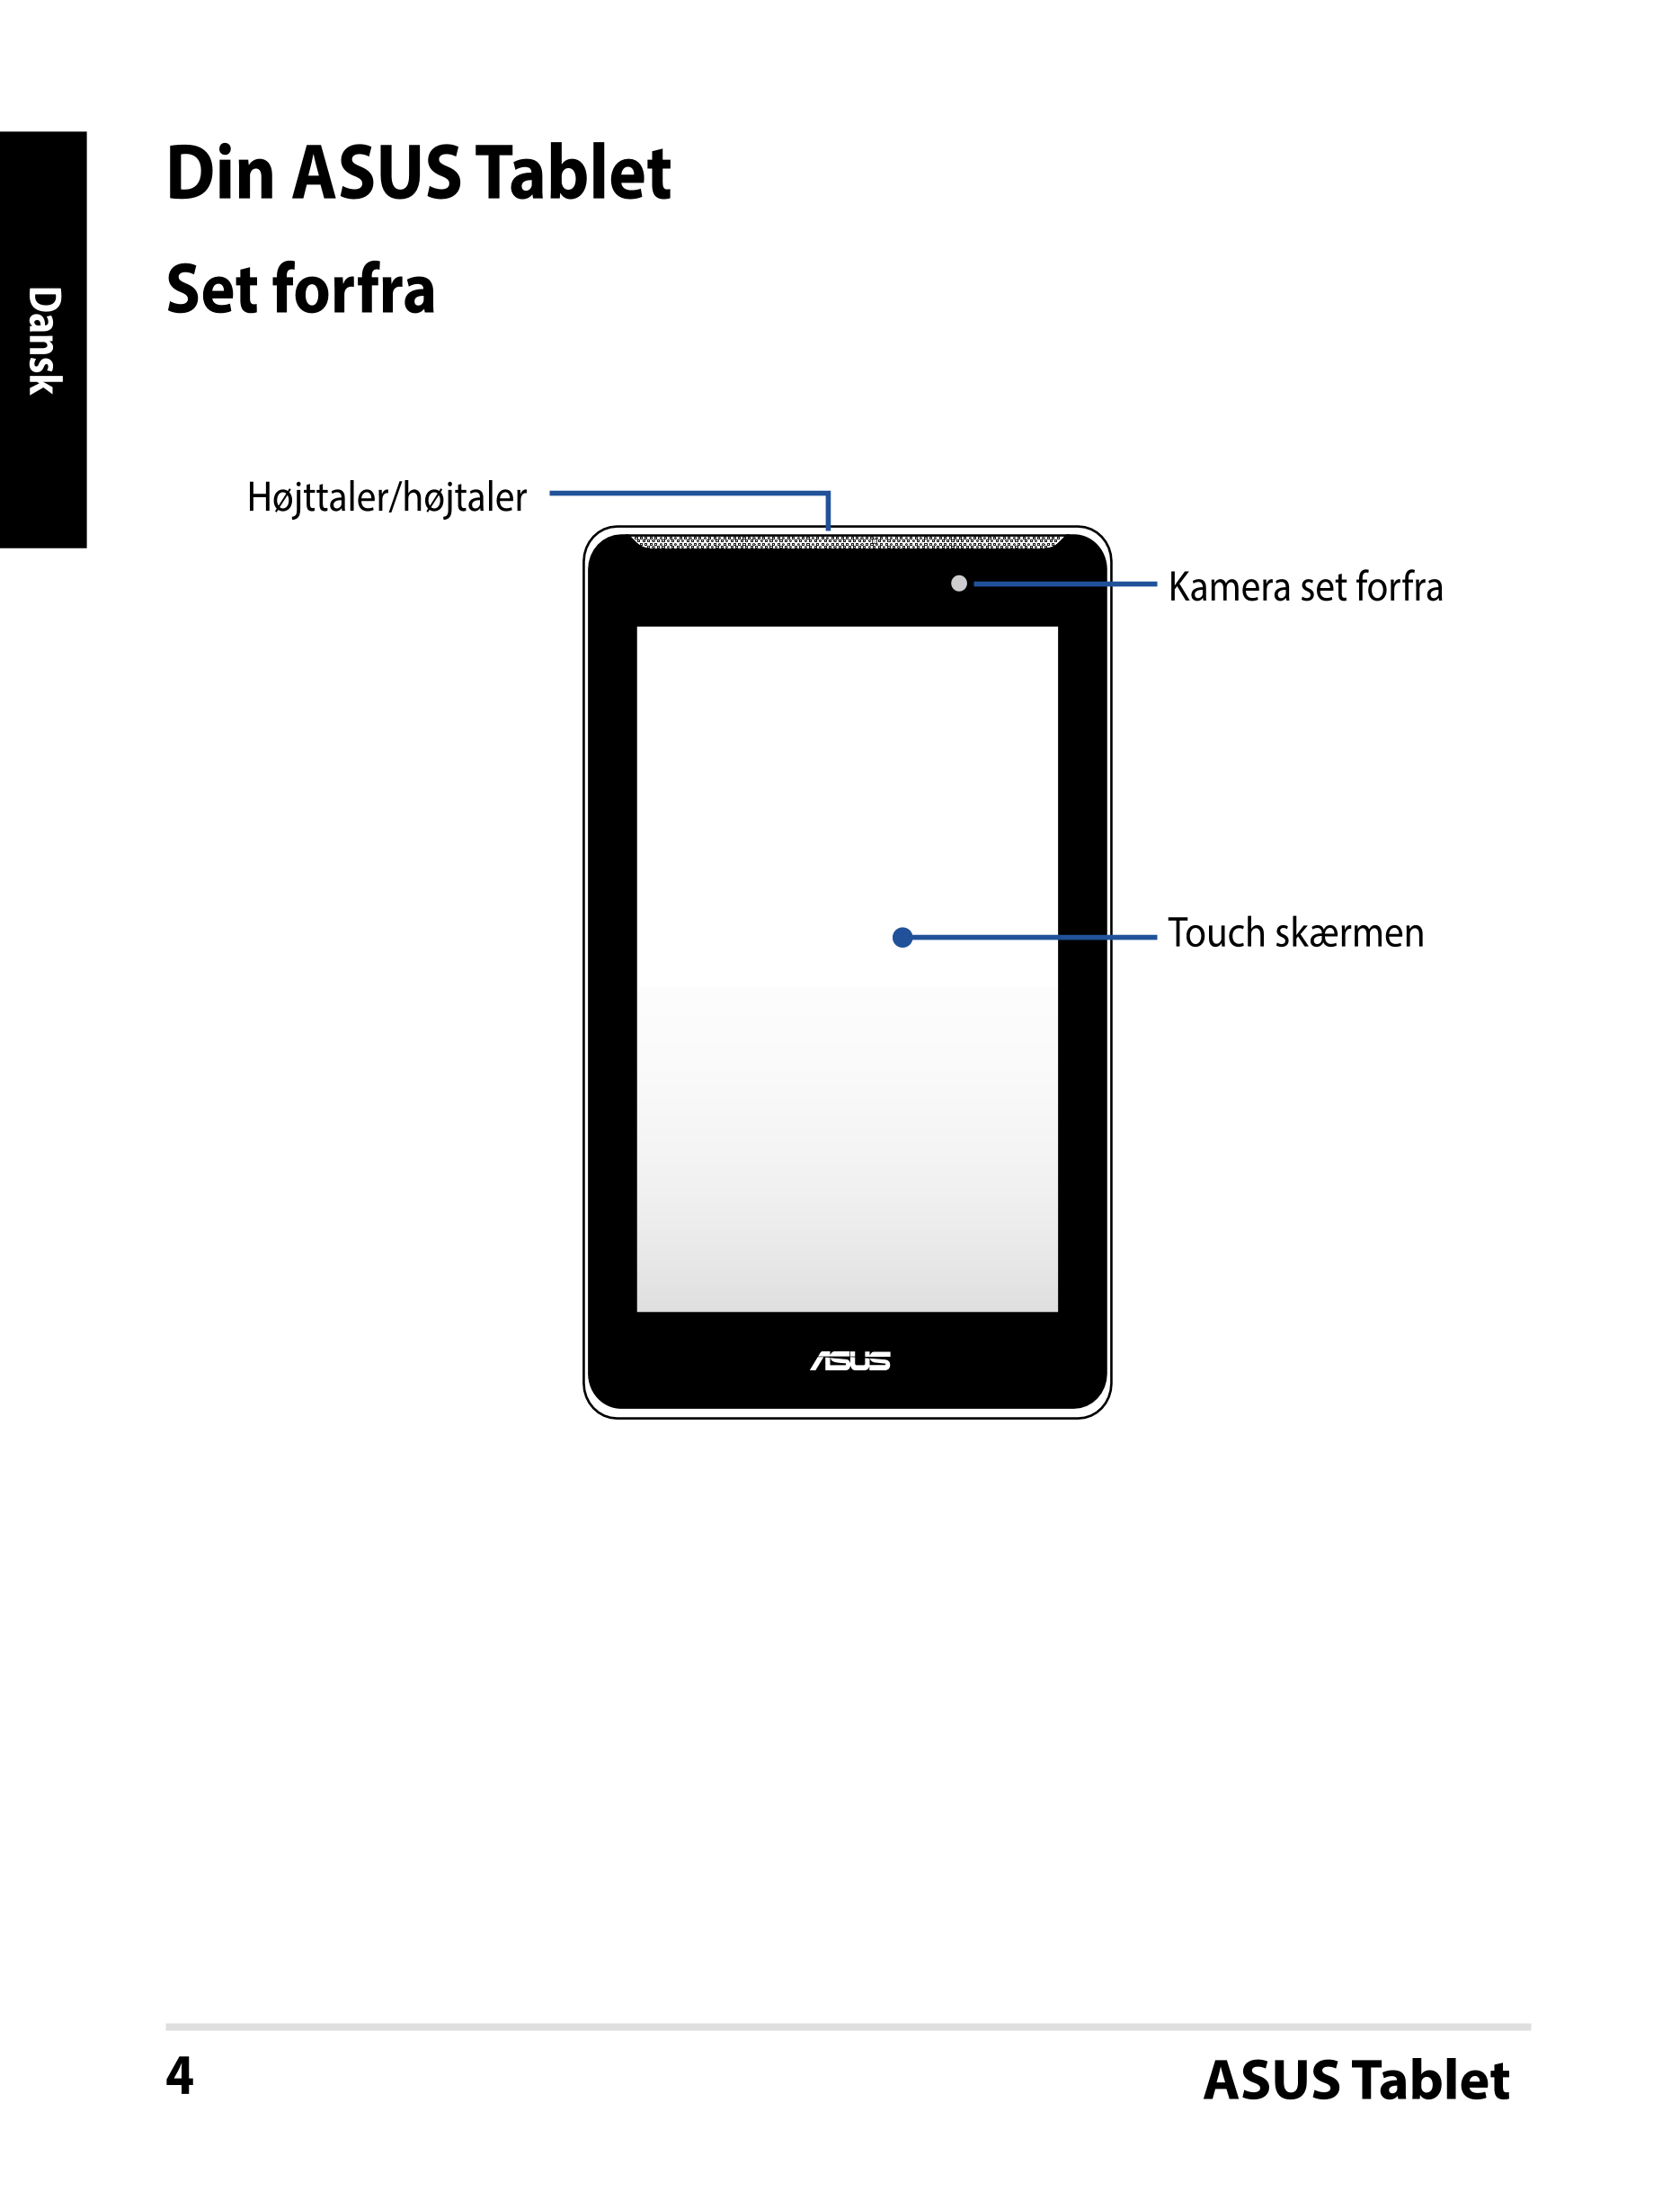 Din ASUS Tablet
Set forfra
Dansk
Højttaler/højtaler
Kamera set forfra
Touch skærmen
4 ASUS Tablet
DA9022_FE170CG_User_Guide.indd